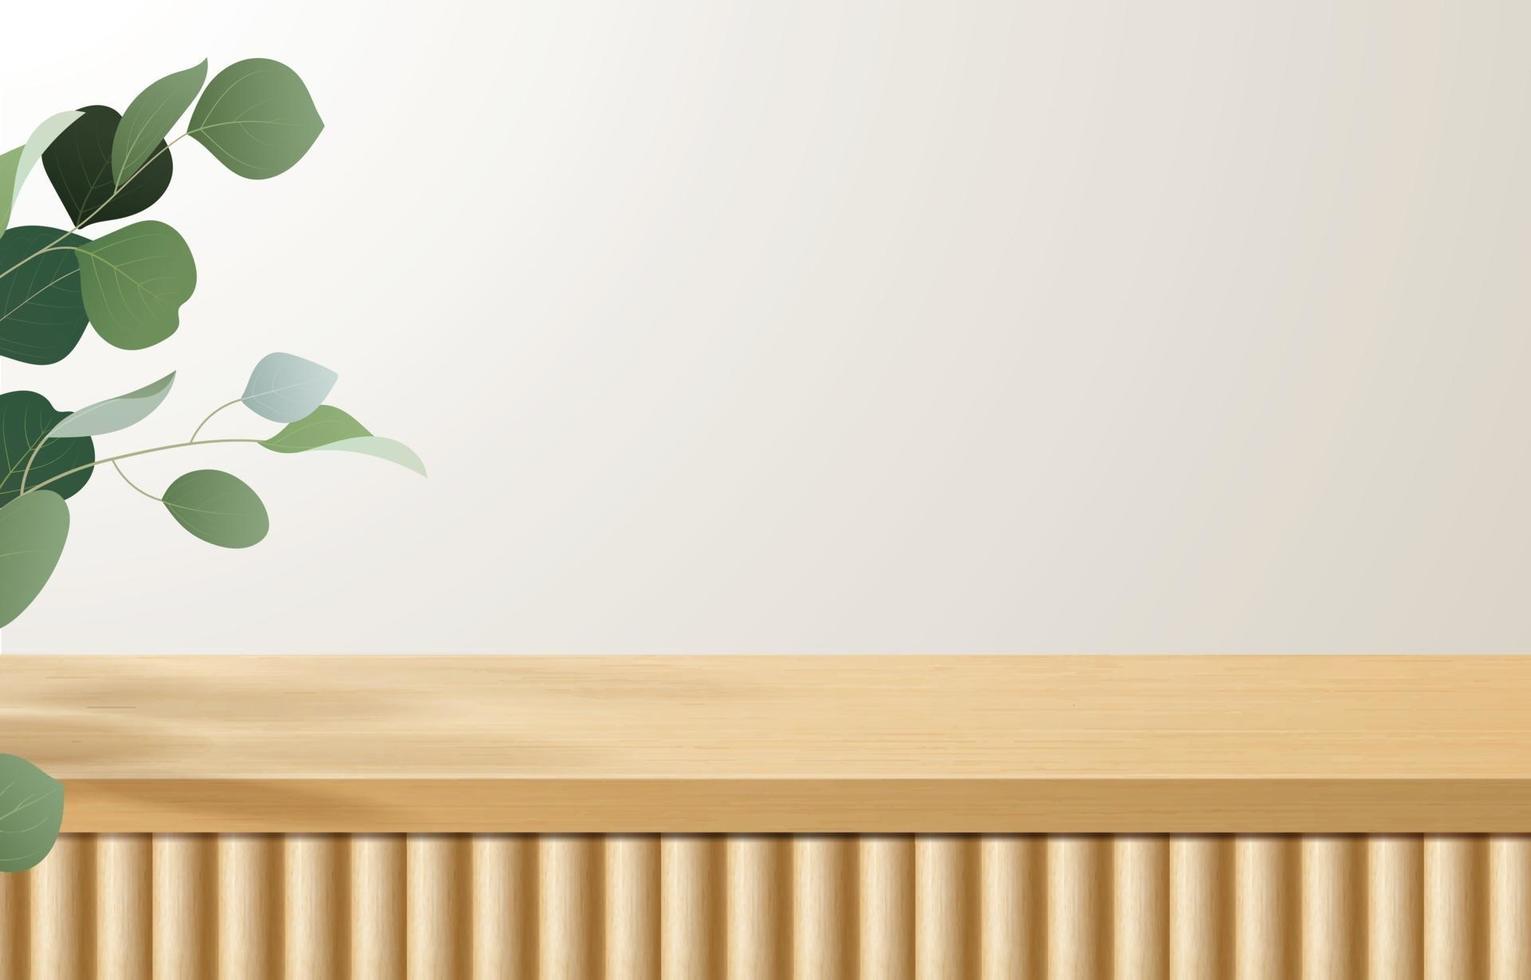 leerer minimaler Holztisch, Holzpodest in weißem Hintergrund mit grünen Blättern. für Produktpräsentation, Mock-Up, Show-Kosmetik-Display, Podium, Bühnenpodest oder Podest. 3D-Vektor vektor